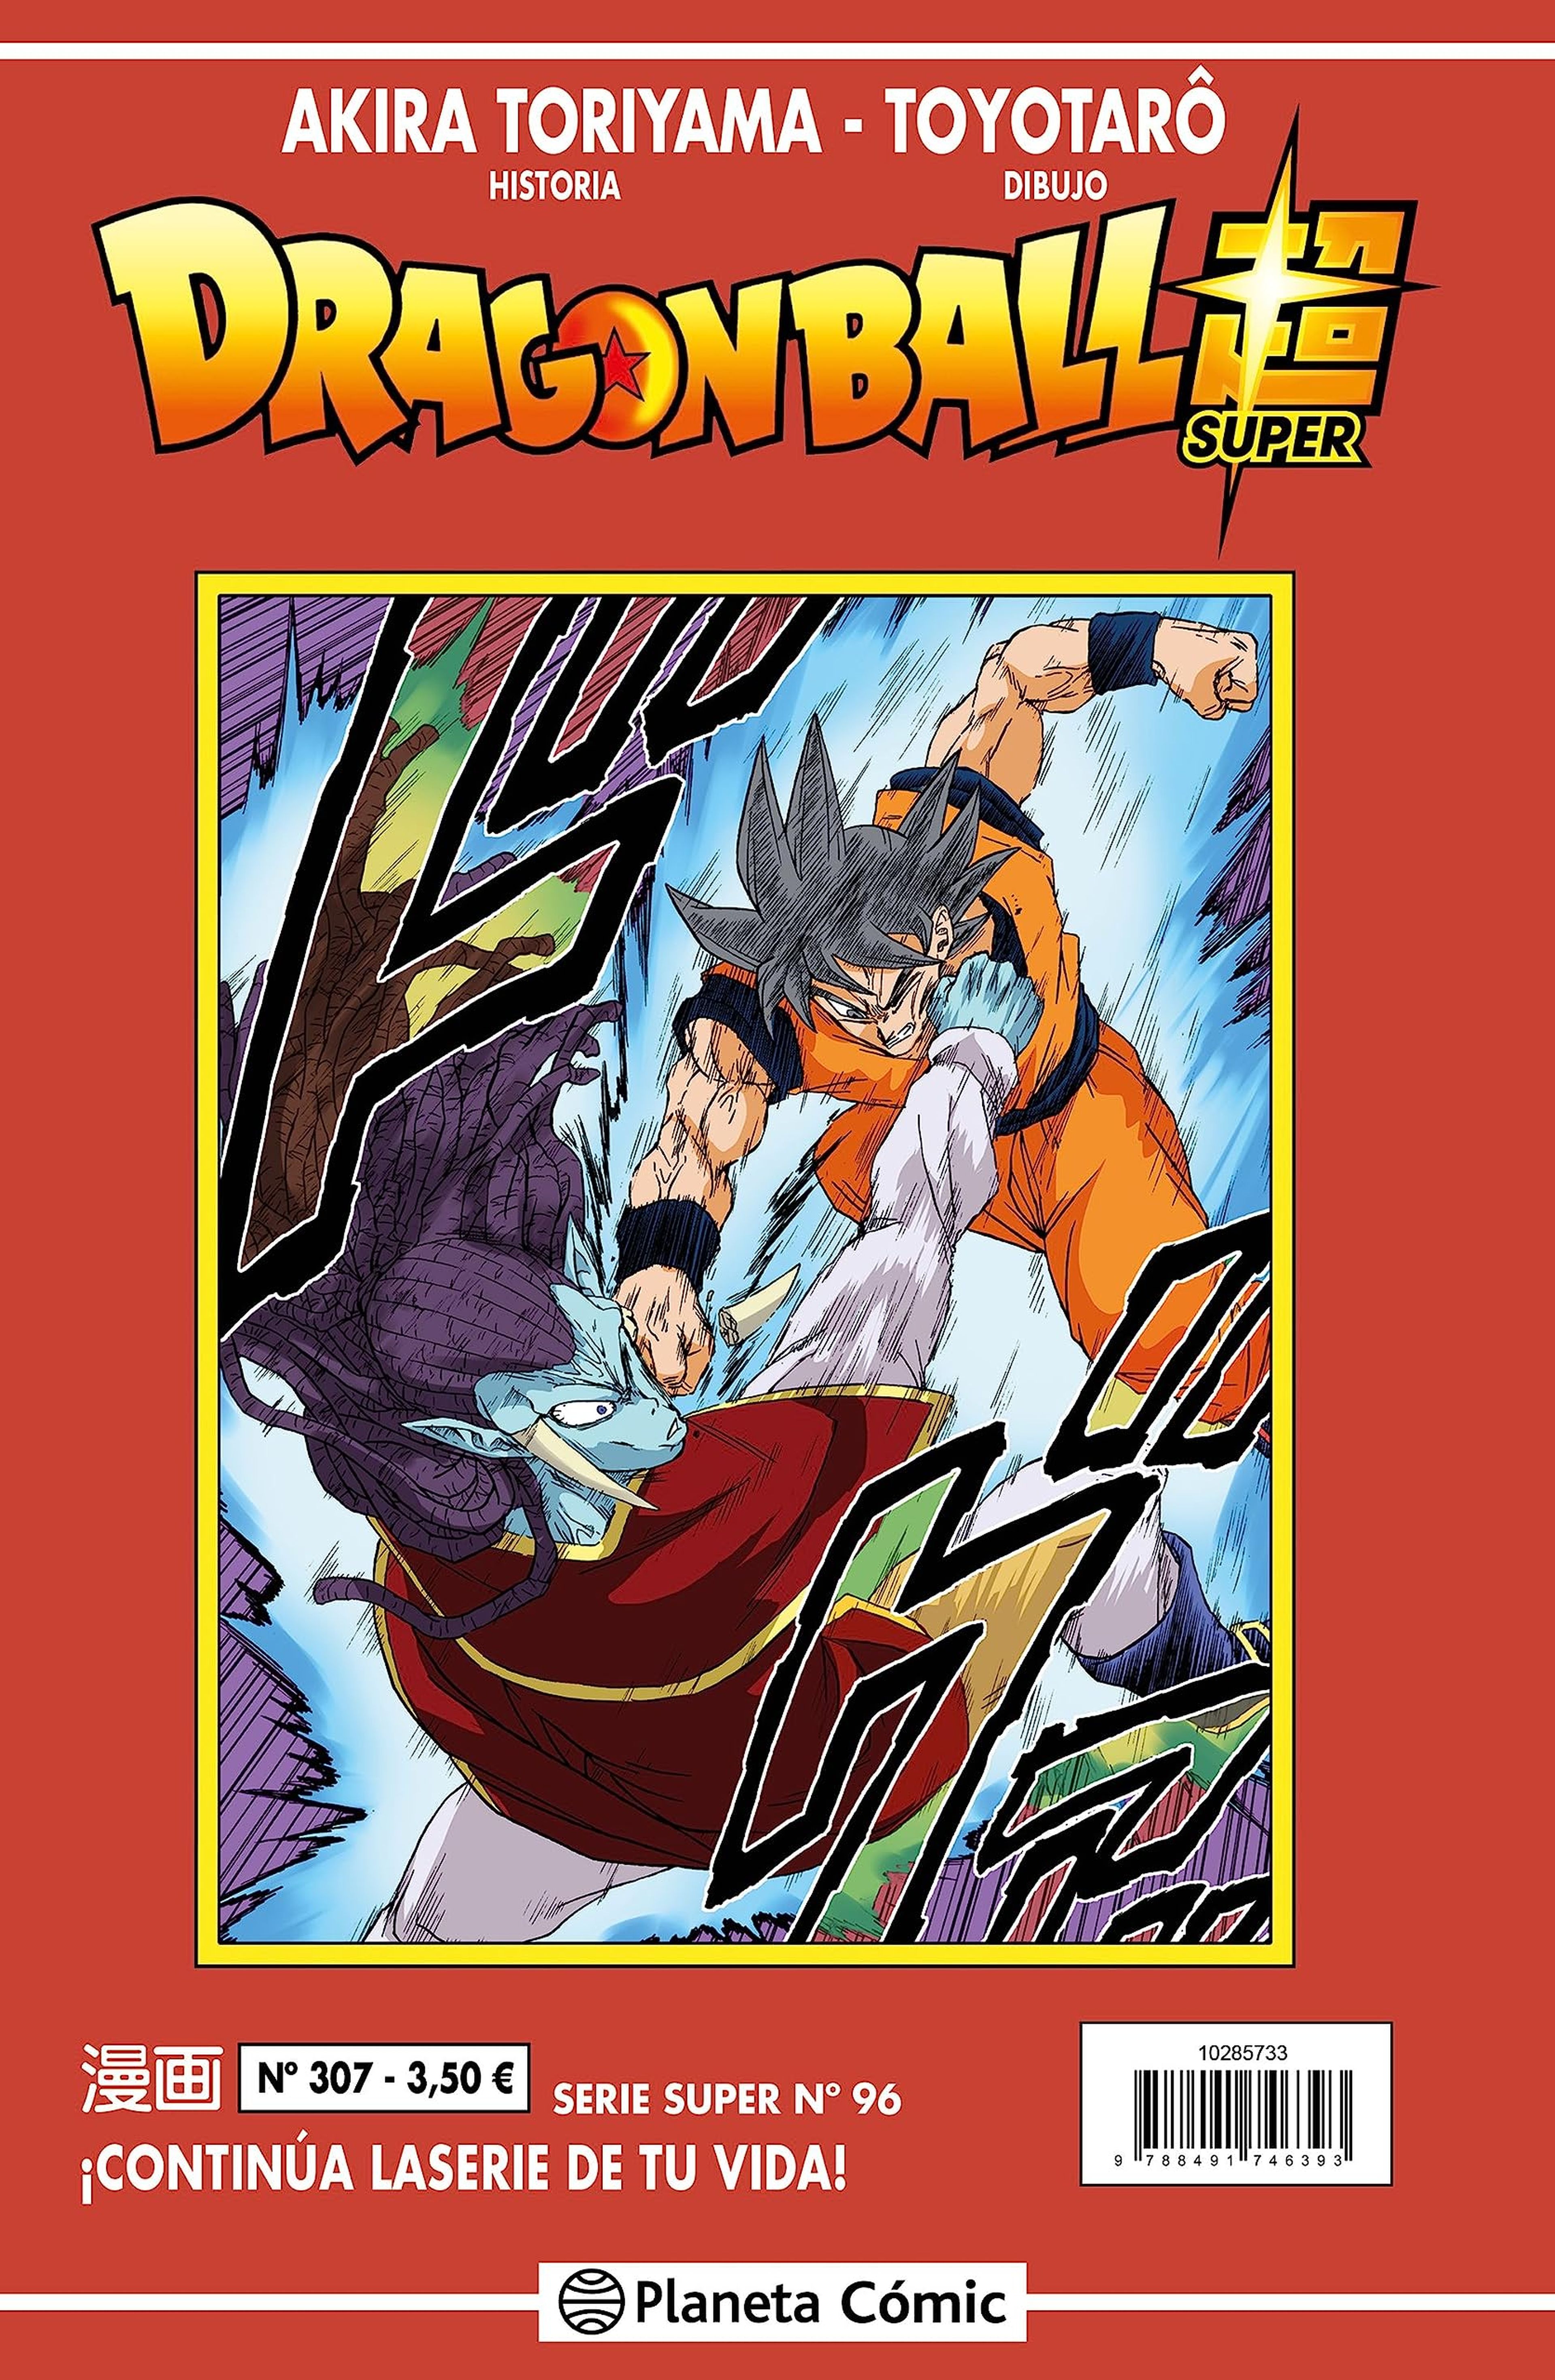 Dragon Ball Super - Portada y fecha de lanzamiento del número 96 de la Serie Roja. ¡Vuelven Goku y sus amigos después del verano!